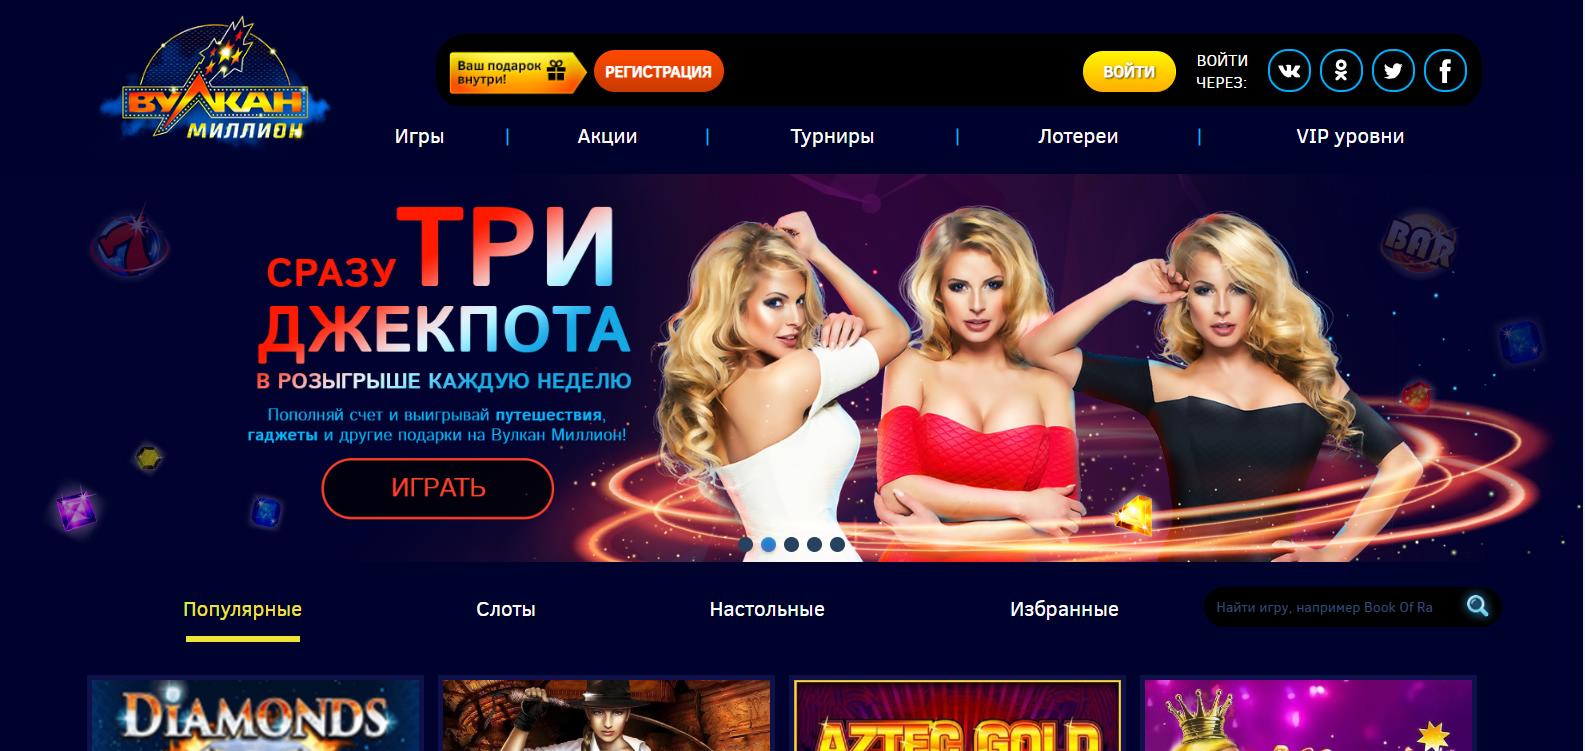 Онлайн казино вулкан миллион бездепозитный бонус мостбет зеркало сегодня www mostbet mostbet ru